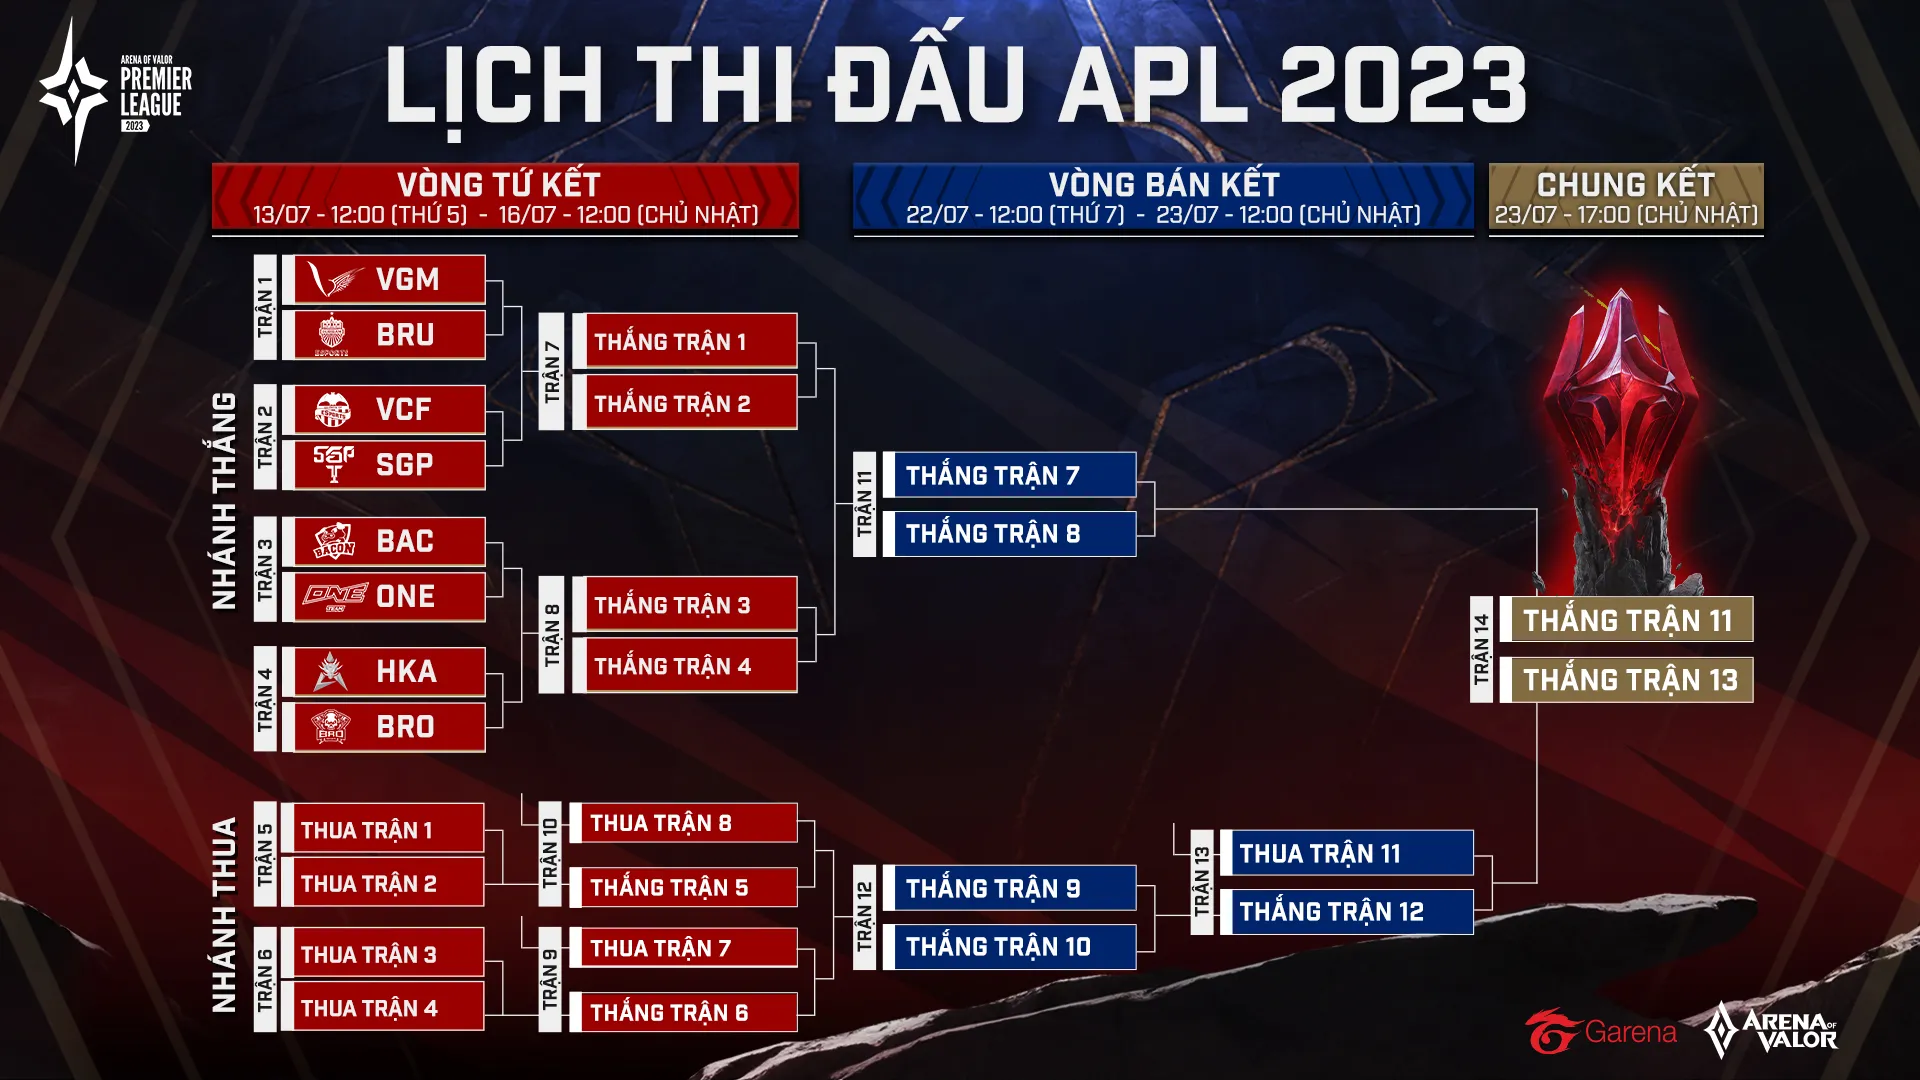 Tổng kết vòng bảng giải đấu APL 2023: V Gaming thống trị bảng tử thần, Saigon Phantom vững vàng theo sau với vị trí thứ 3